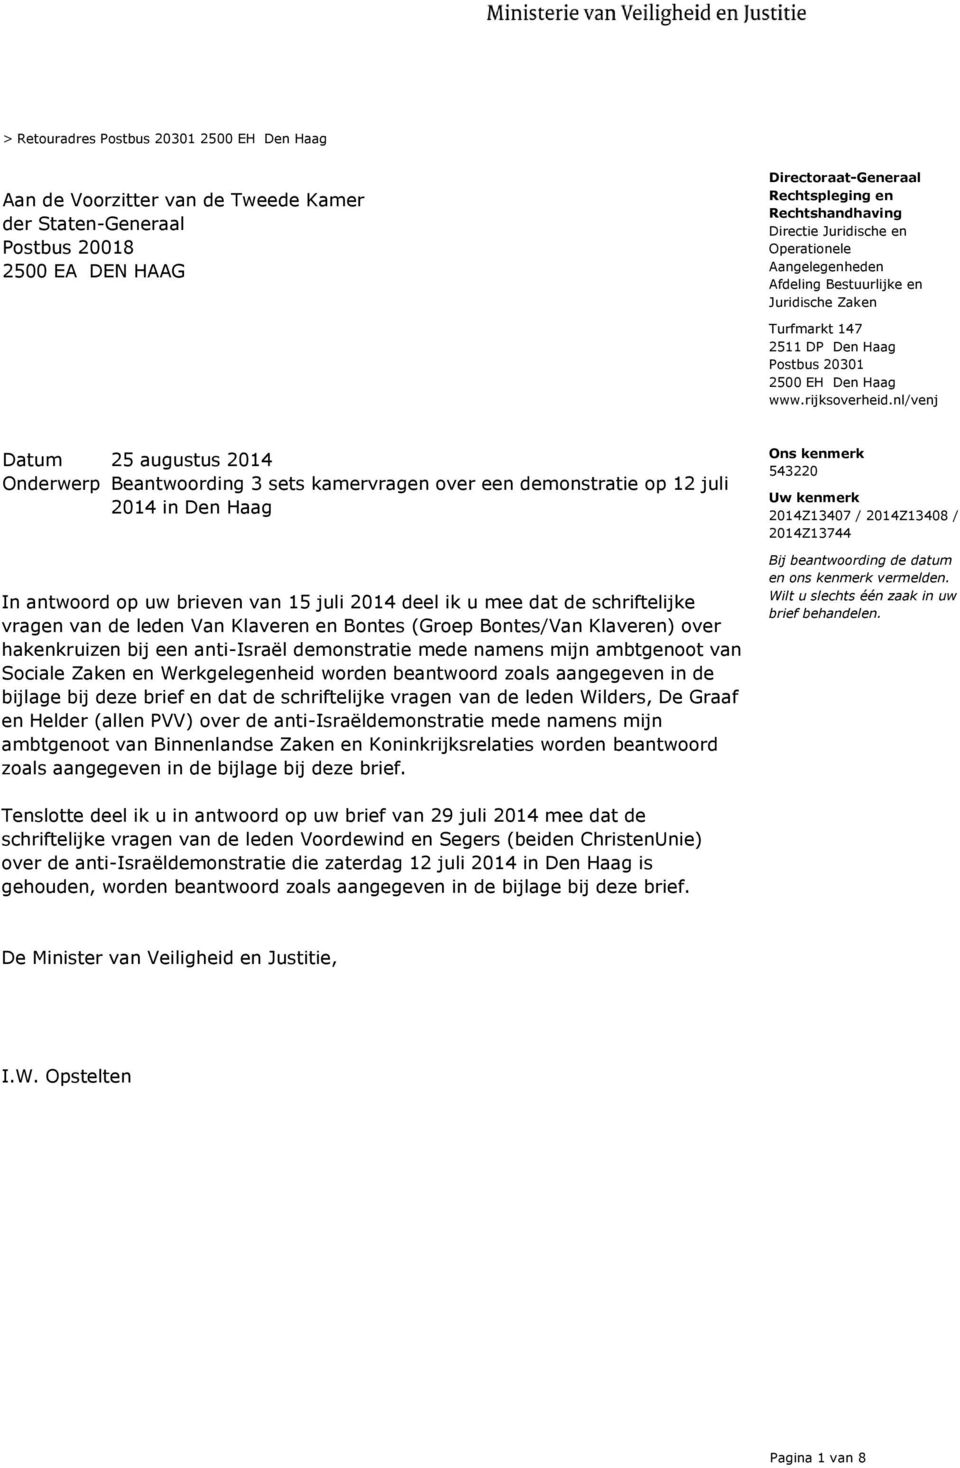 nl/venj Onderwerp Beantwoording 3 sets kamervragen over een demonstratie op 12 juli 2014 in Den Haag In antwoord op uw brieven van 15 juli 2014 deel ik u mee dat de schriftelijke vragen van de leden